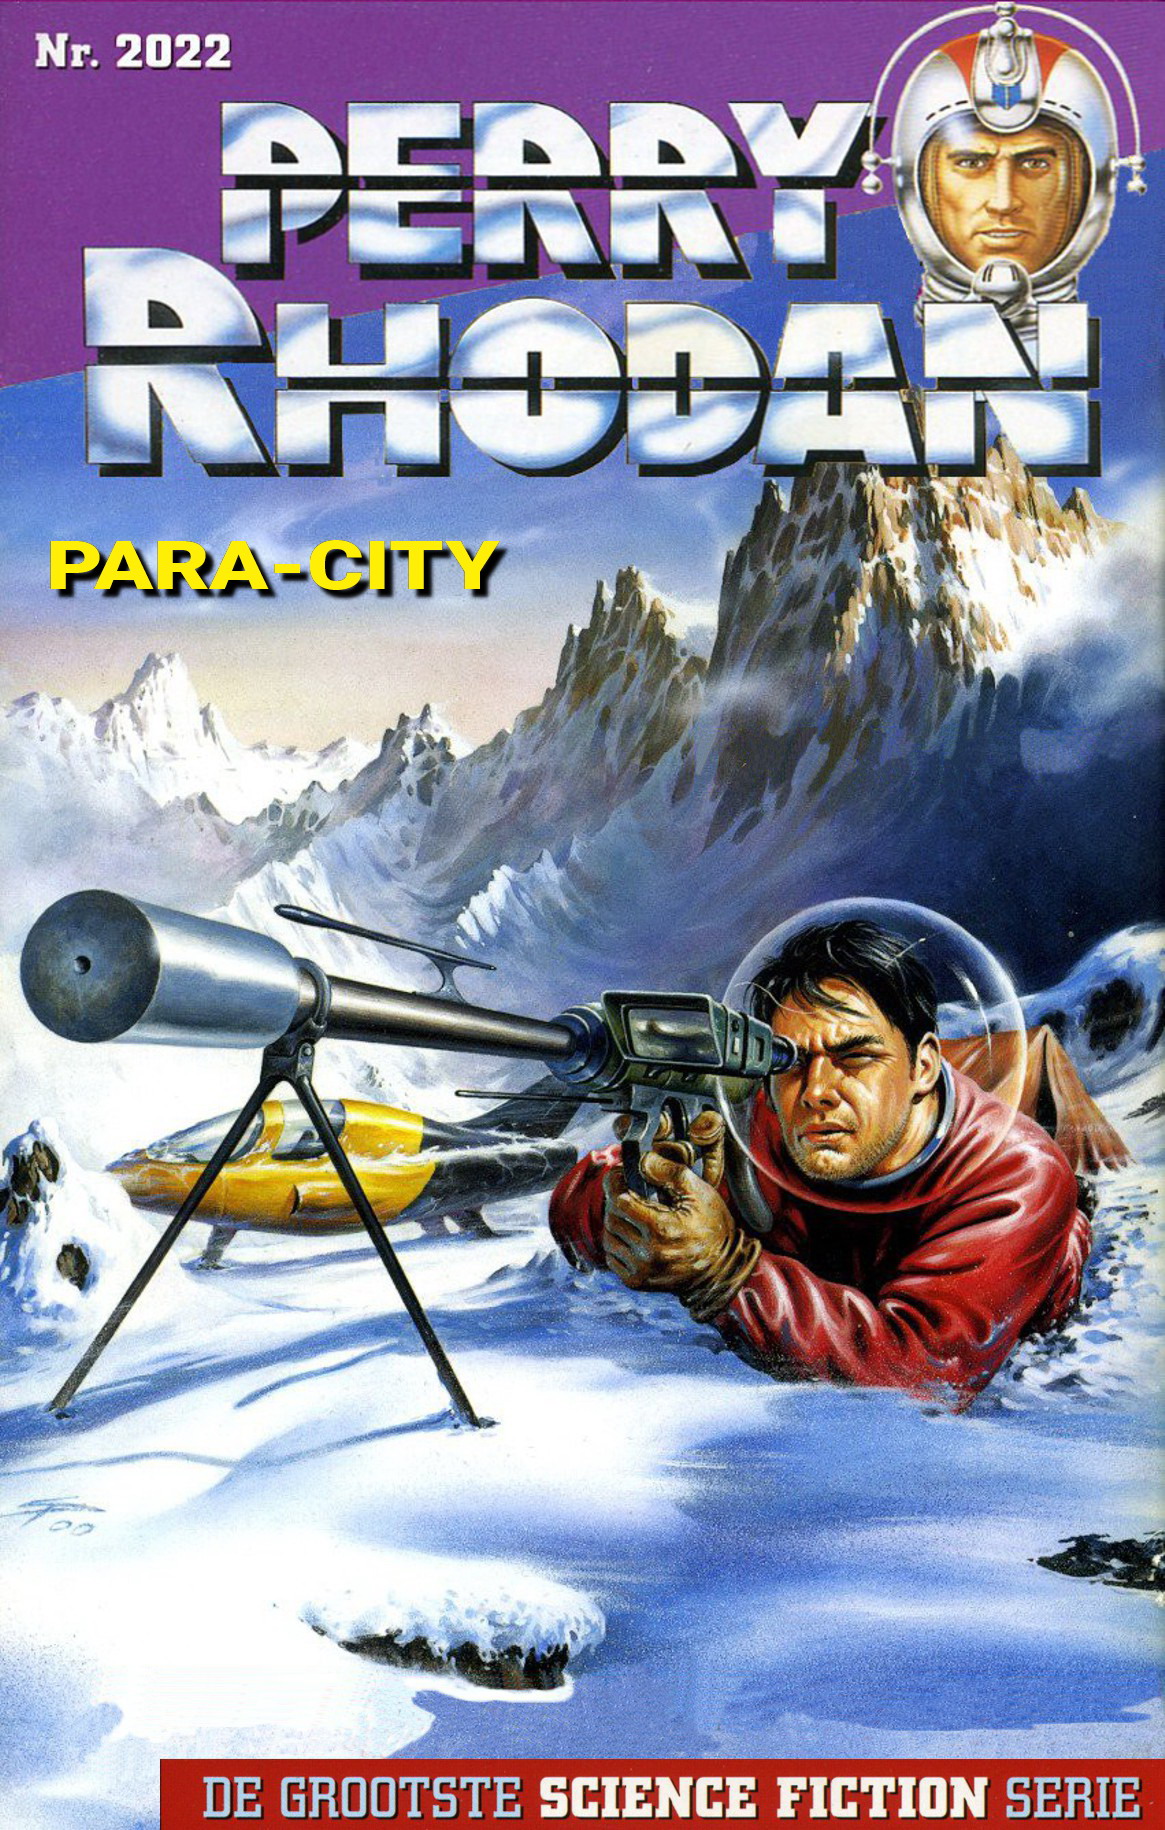 Perry Rhodan 2022 - Para-city